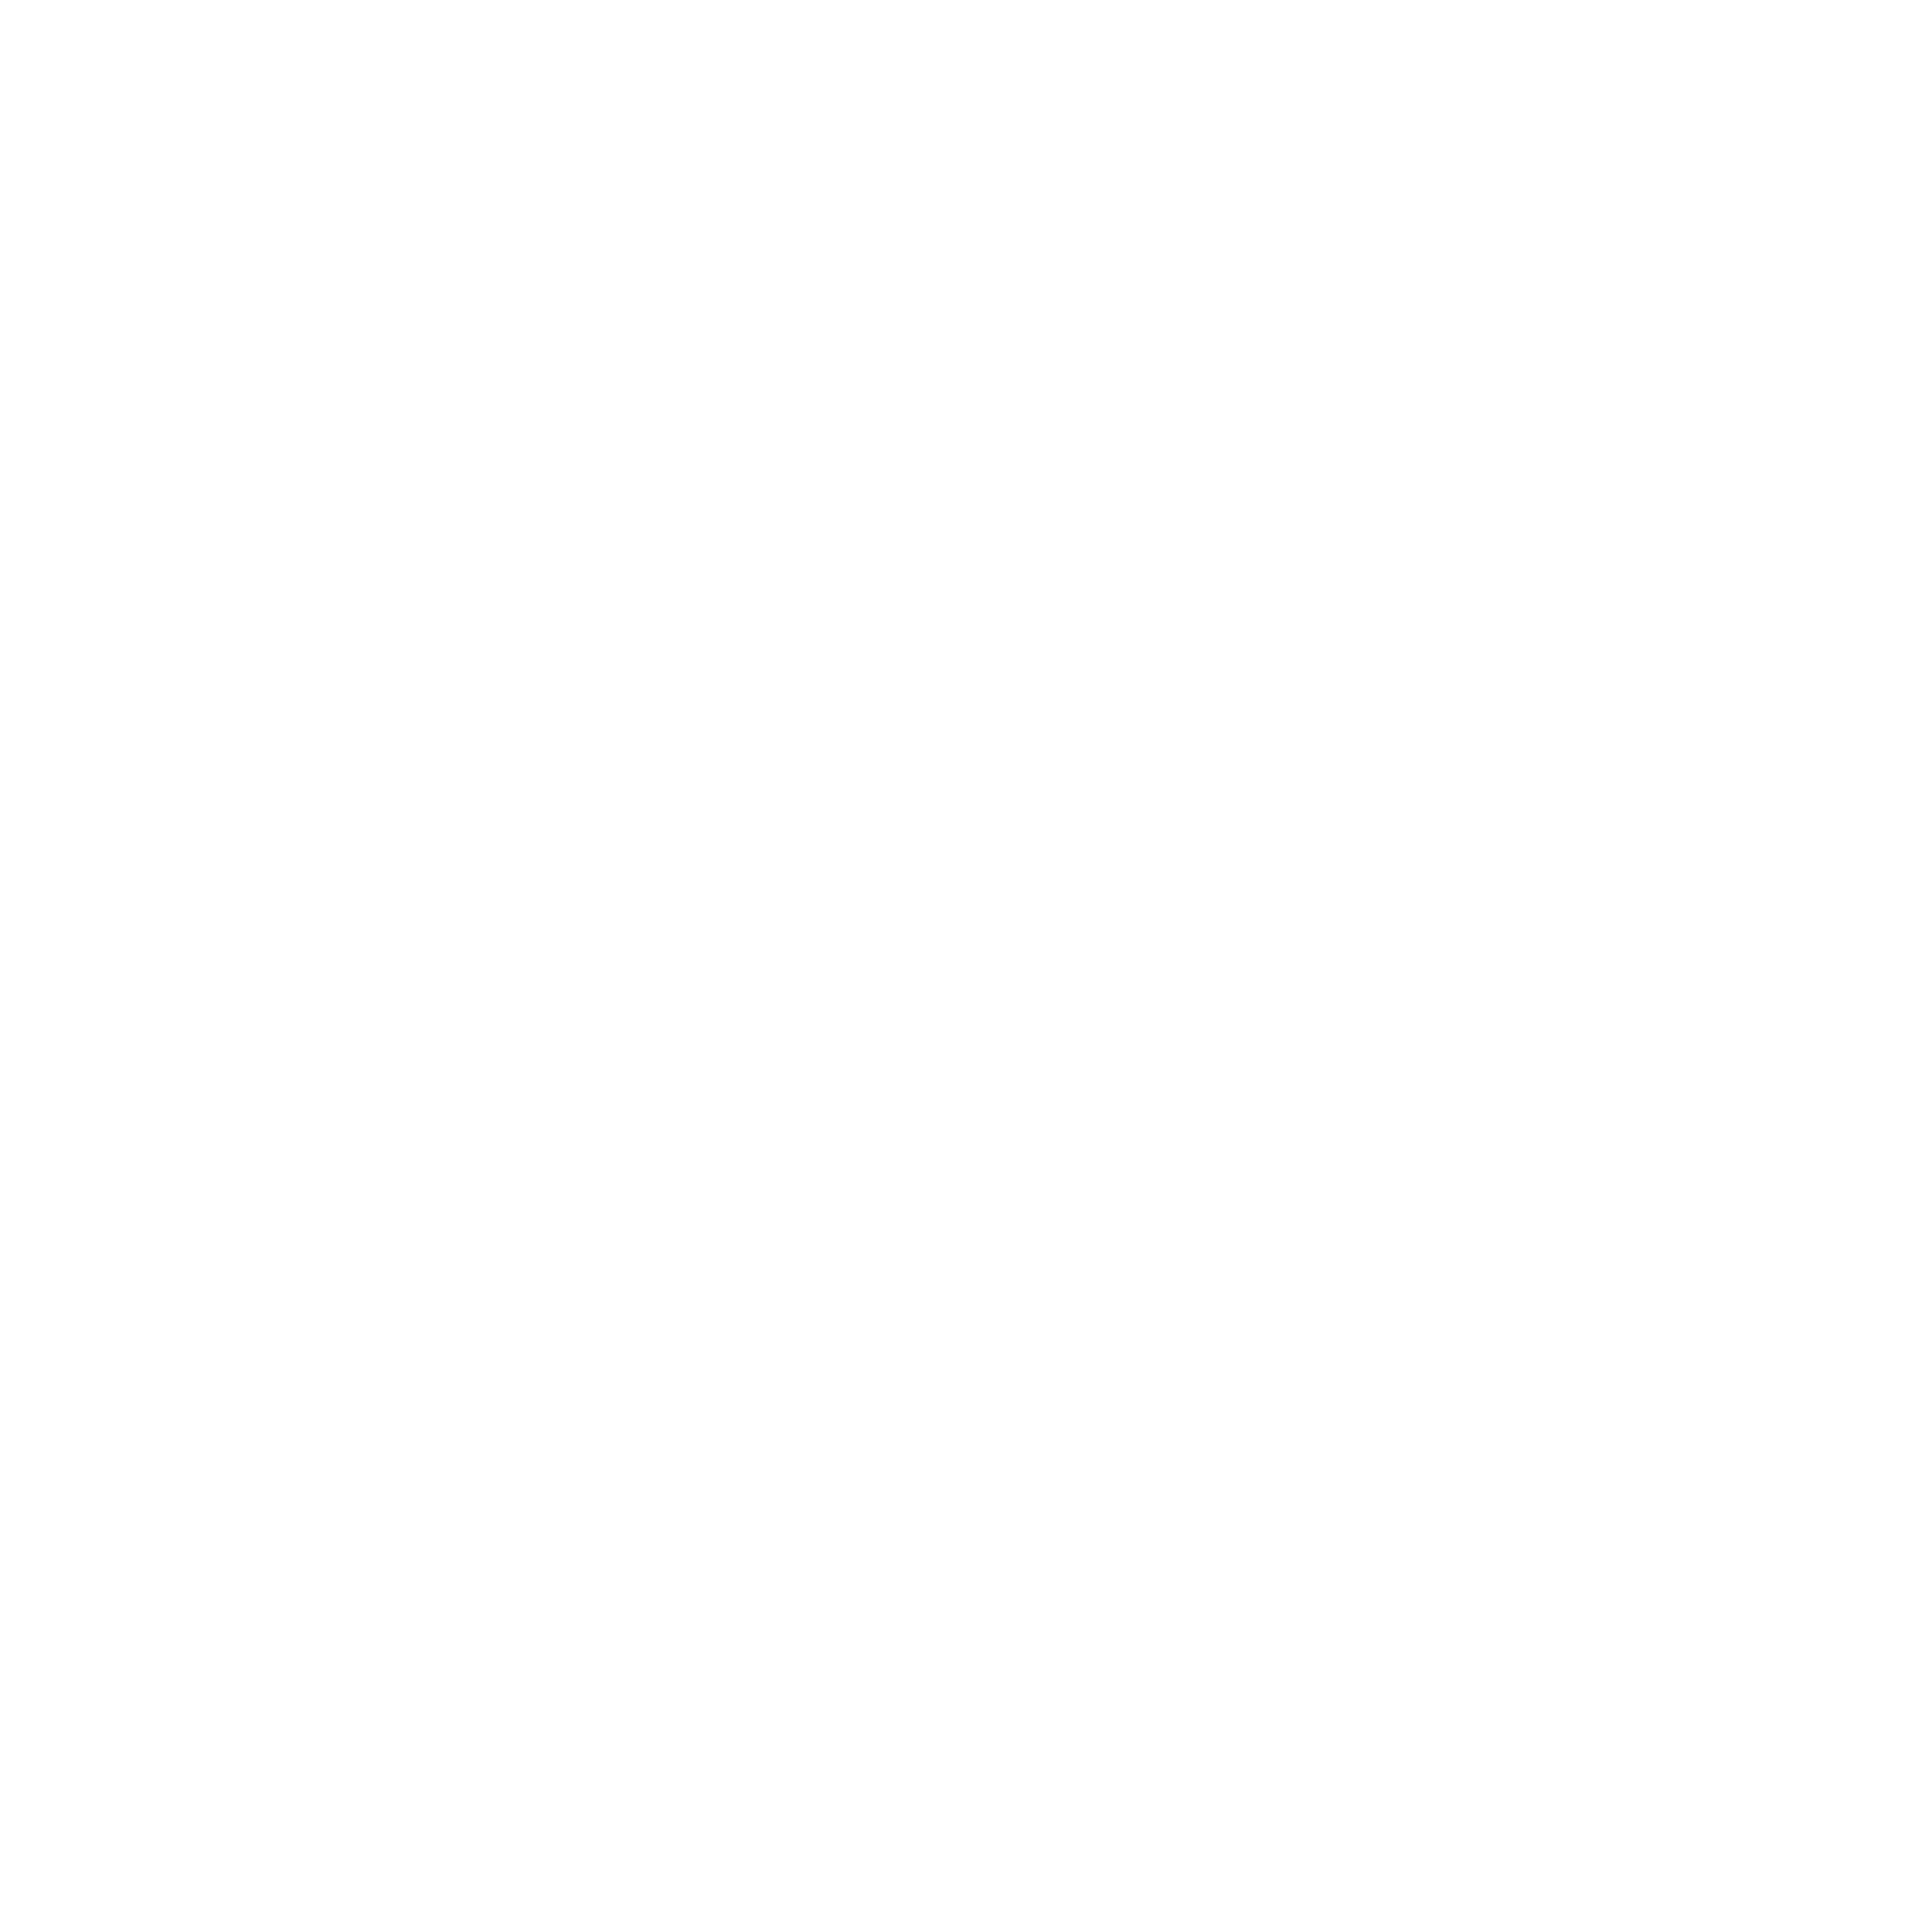 Sleipnir Tours Logo Mythical Nordic Horse Sleipnir logo white